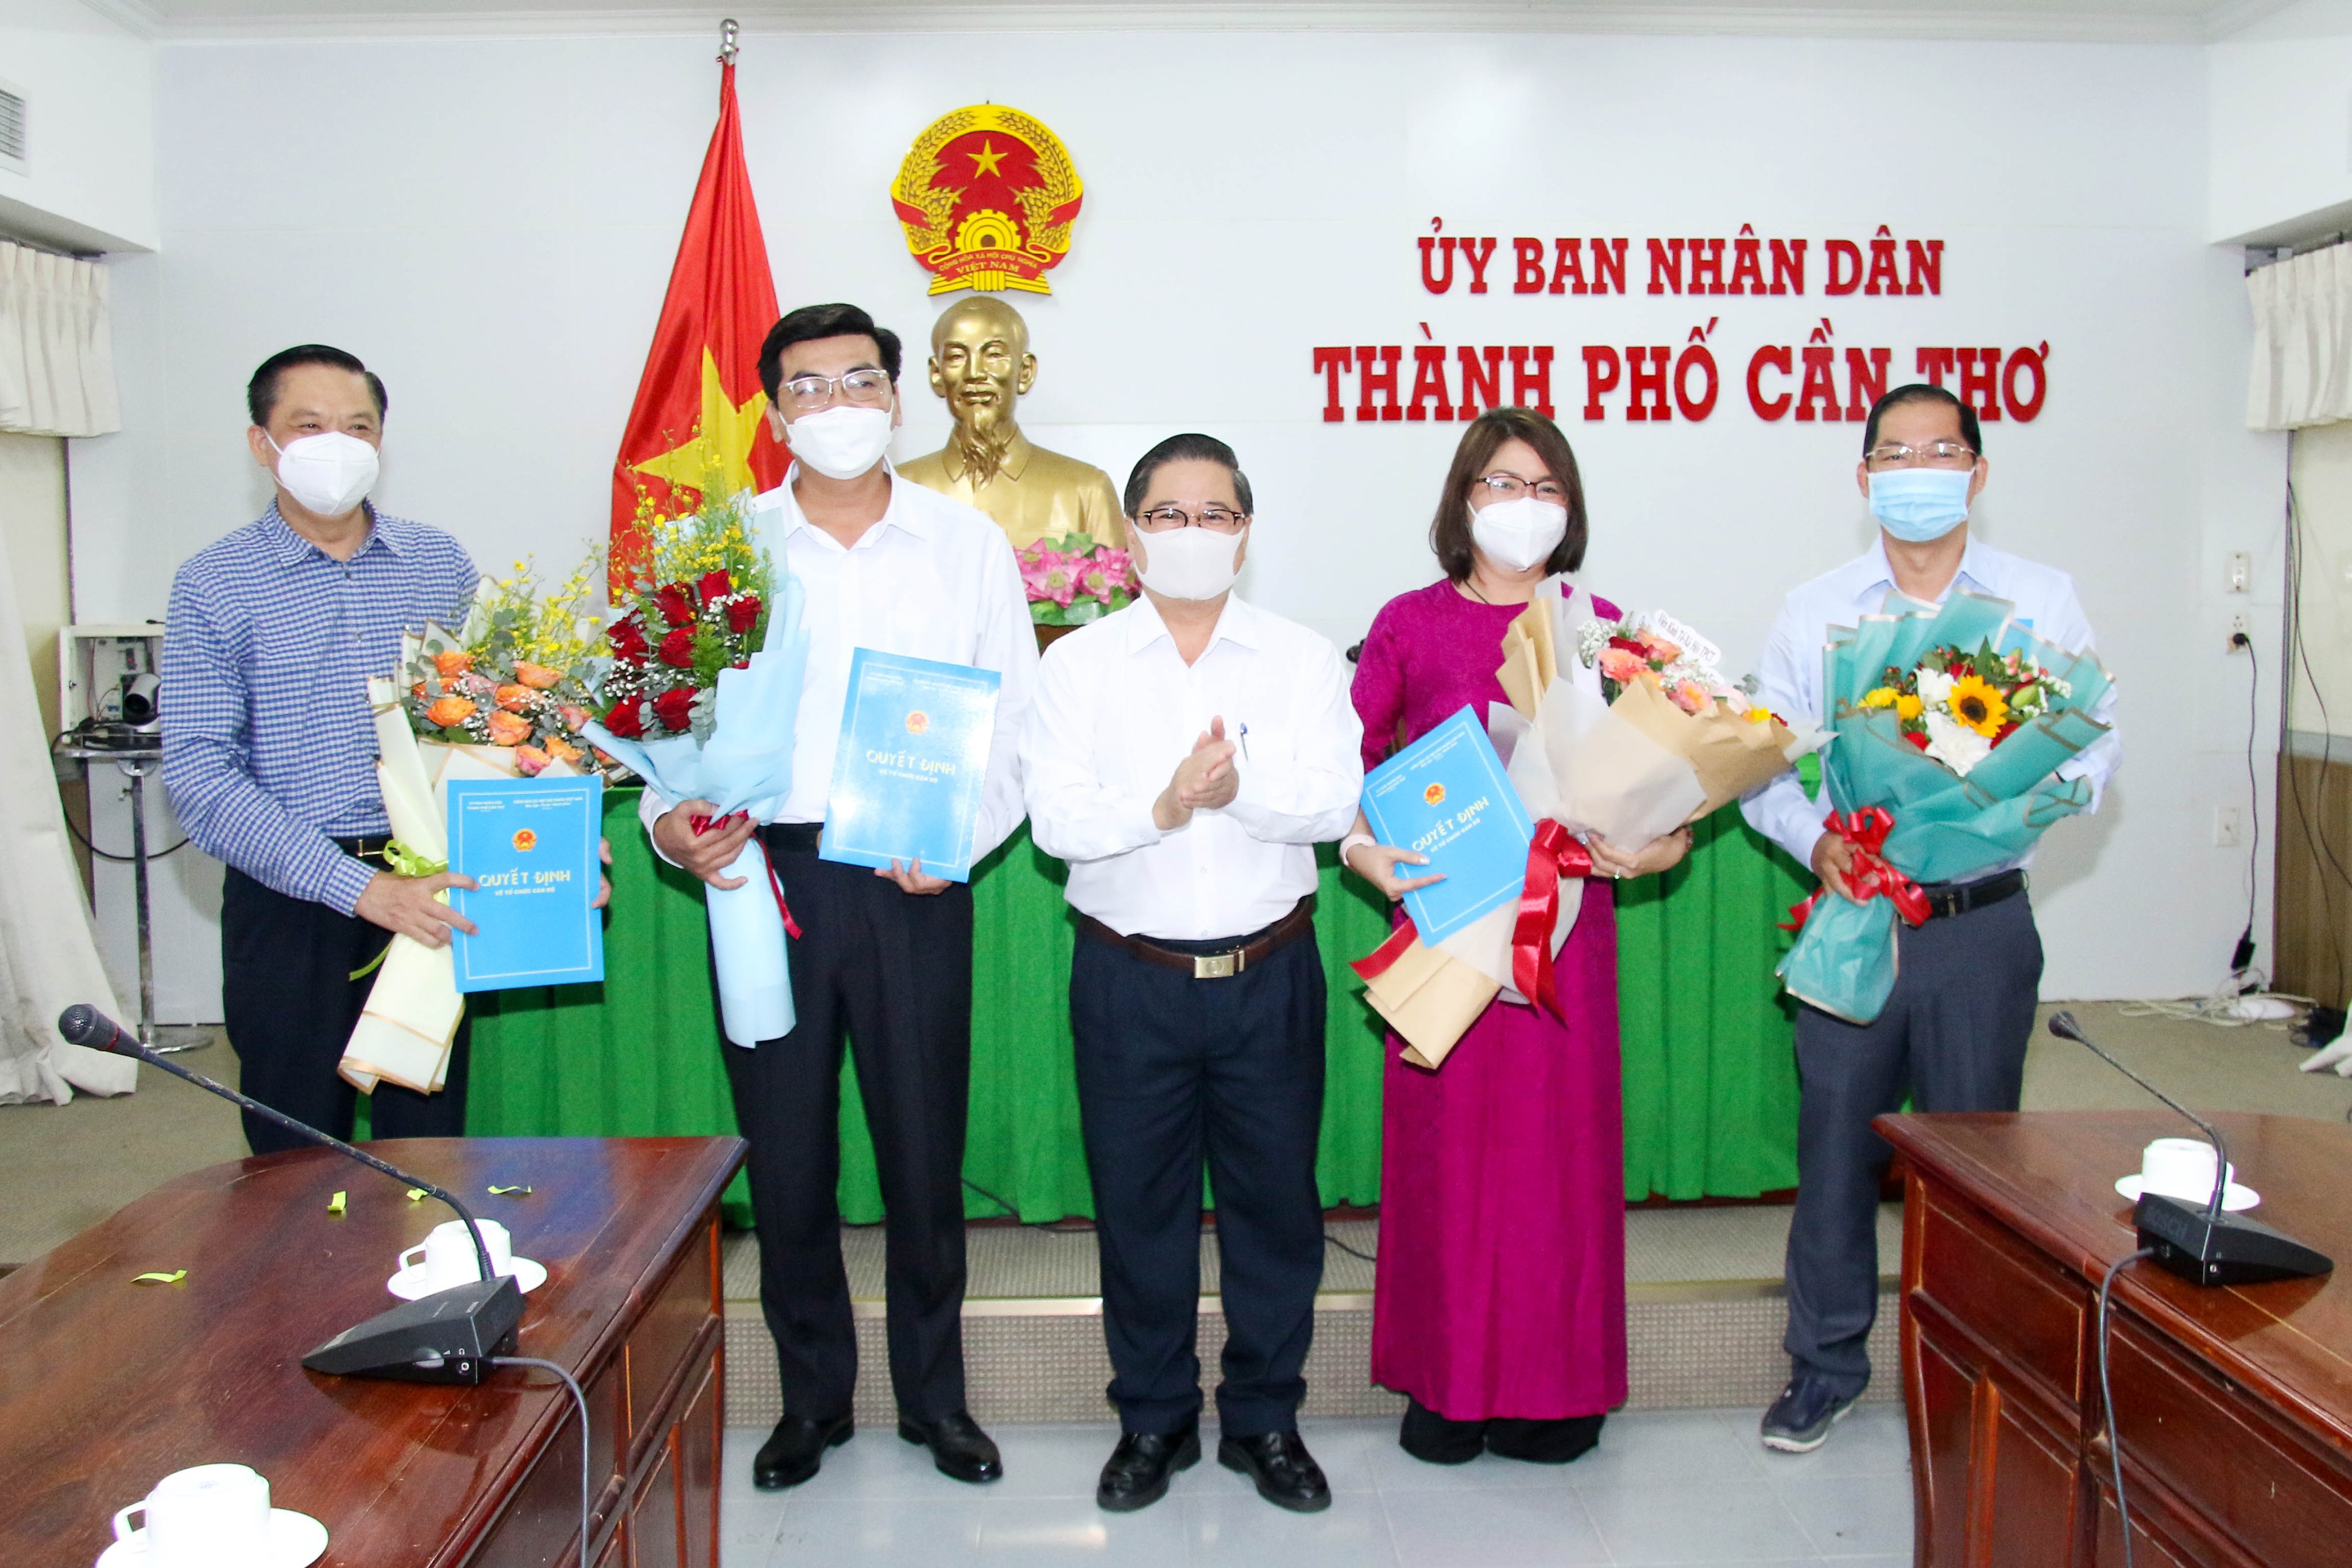 Ông Trần Việt Trường – Phó Bí thư Thành ủy, Chủ tịch UBND TP. Cần Thơ trao quyết định cho các đồng chí nhận nhiệm vụ.